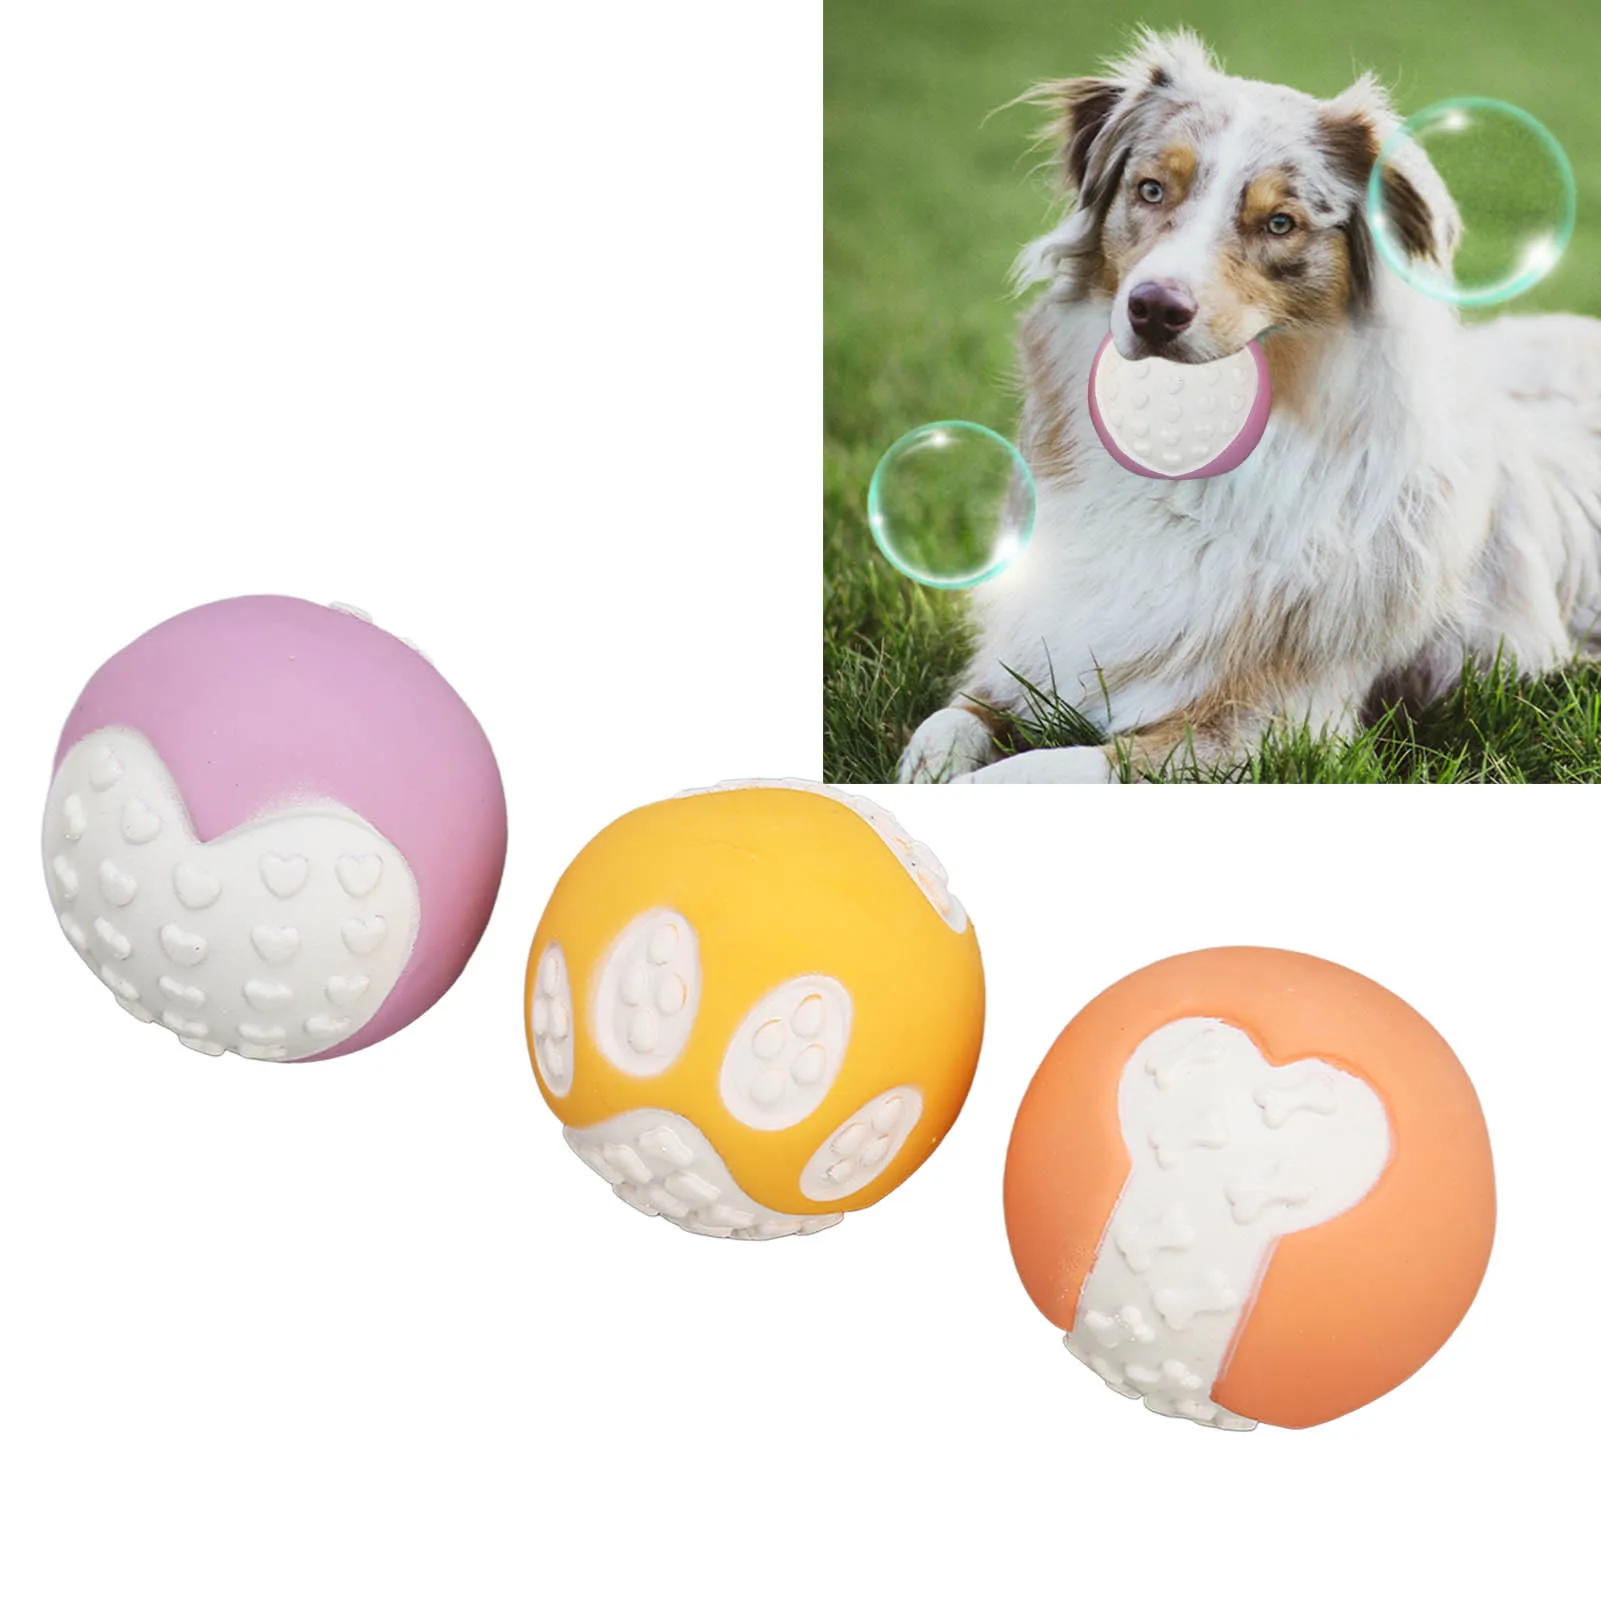 

Пищалка игрушки для собак из натурального латекса резиновые шарики мягкие надувные прочные для маленьких и средних собак Интерактивная жевательная игрушка для собак